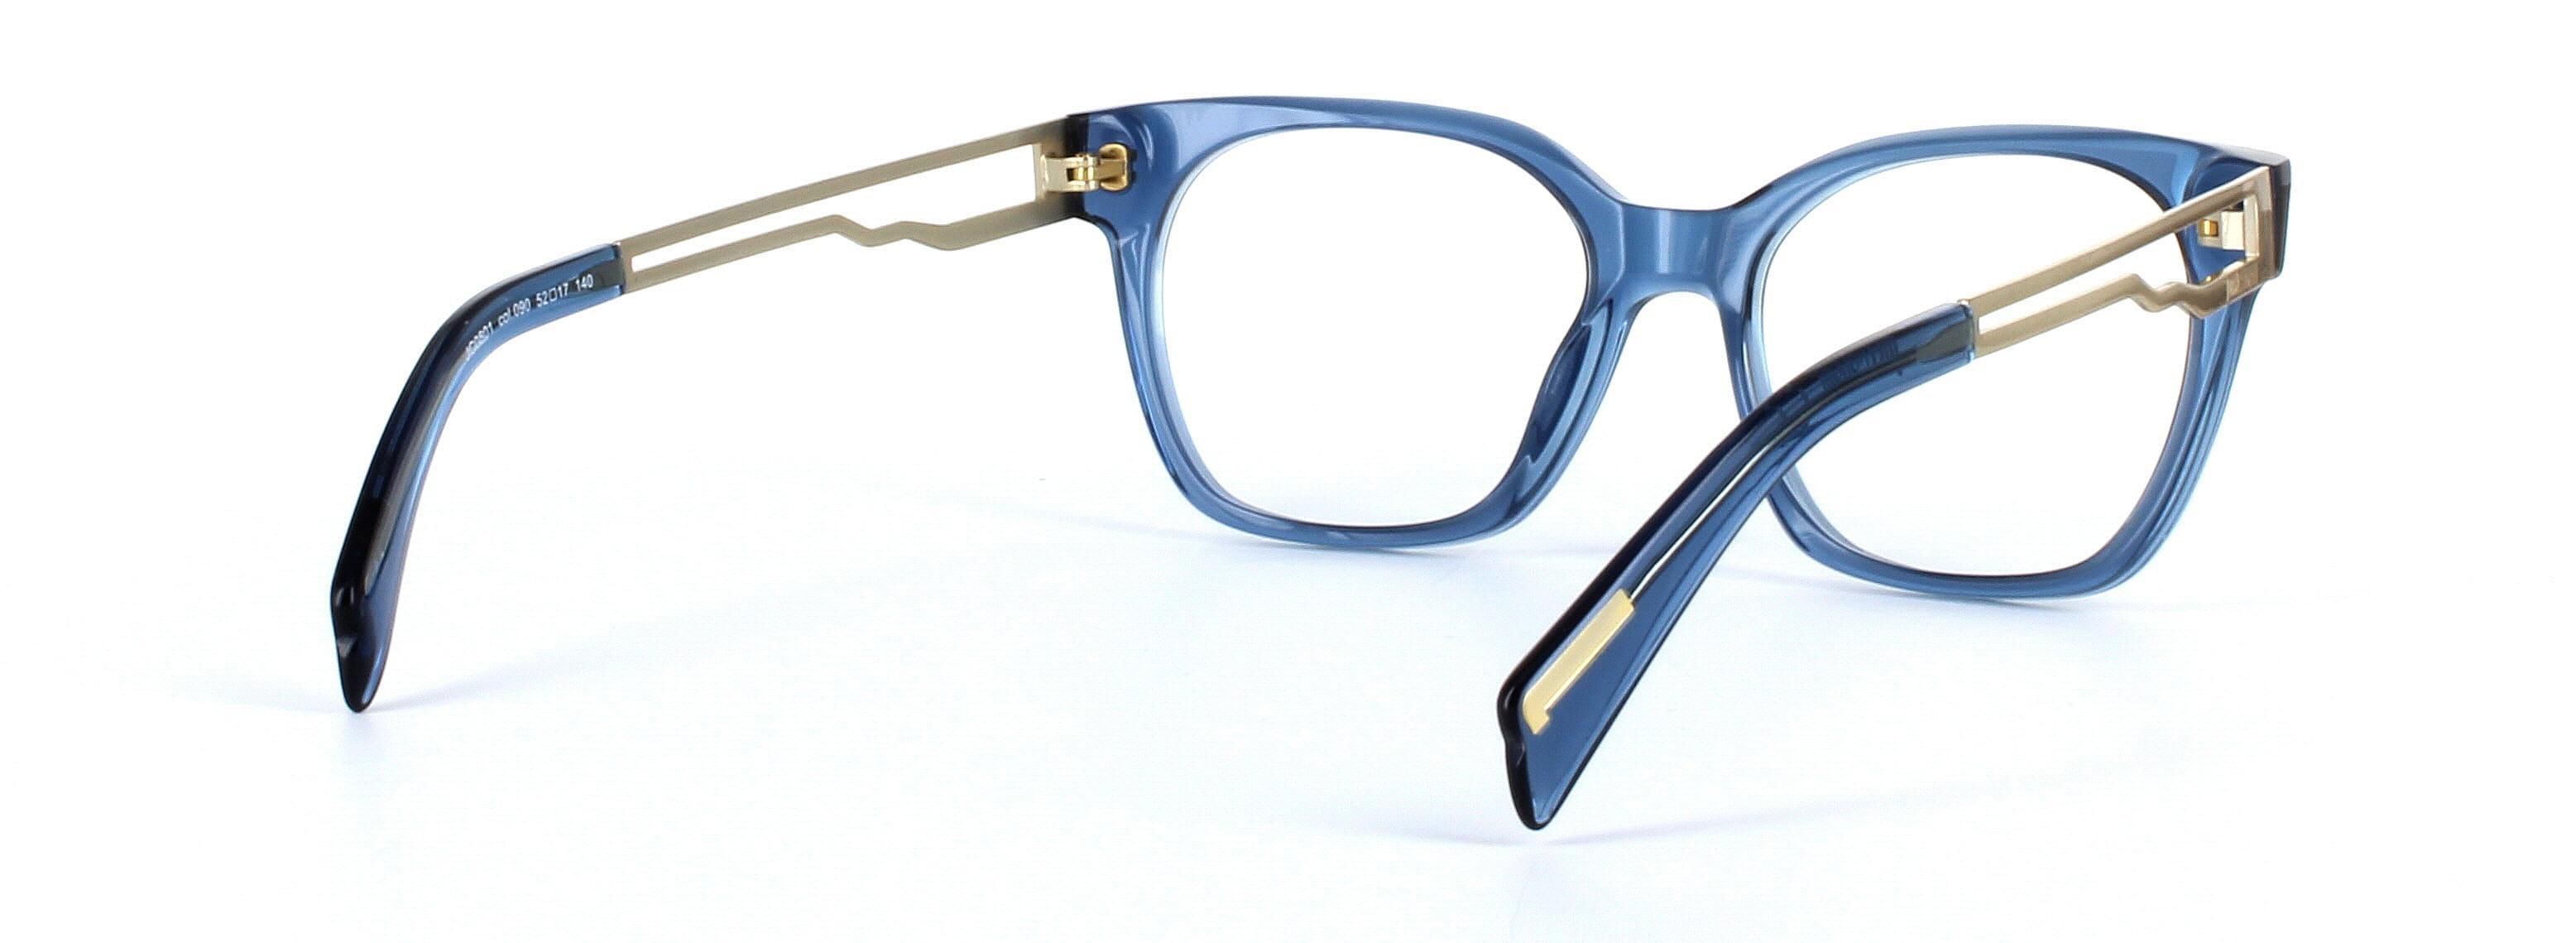 JUST CAVALLI (JC0801) Blue Full Rim Square Acetate Glasses - Image View 4